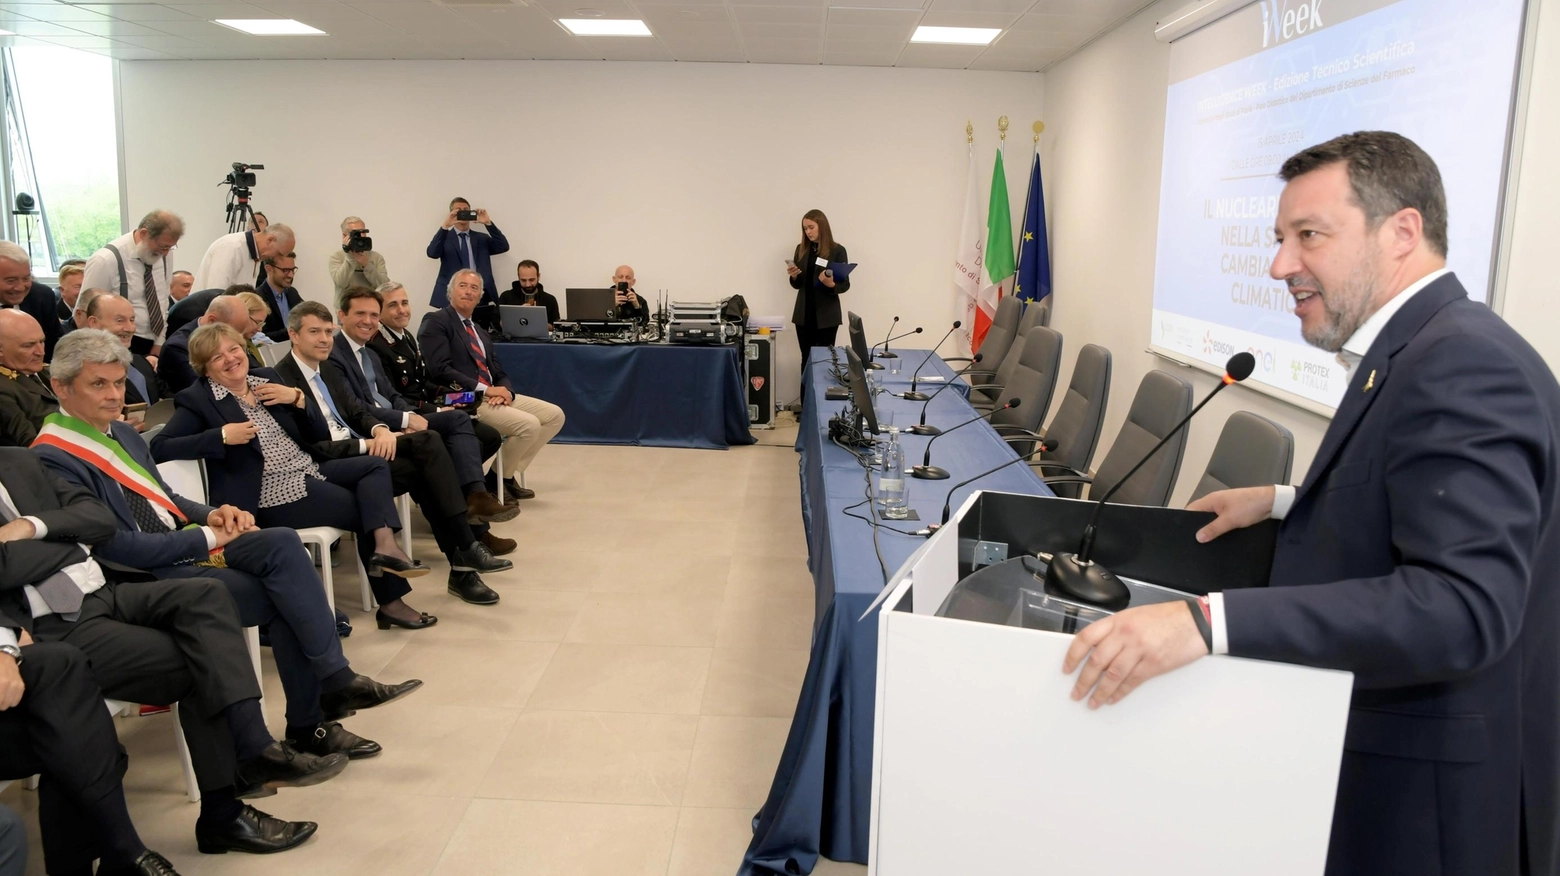 Il vicepresidente del Consiglio in città per il convegno sull’energia pulita. Il deputato di FI Alessandro Cattaneo: "Pavia coraggiosa protagonista" .